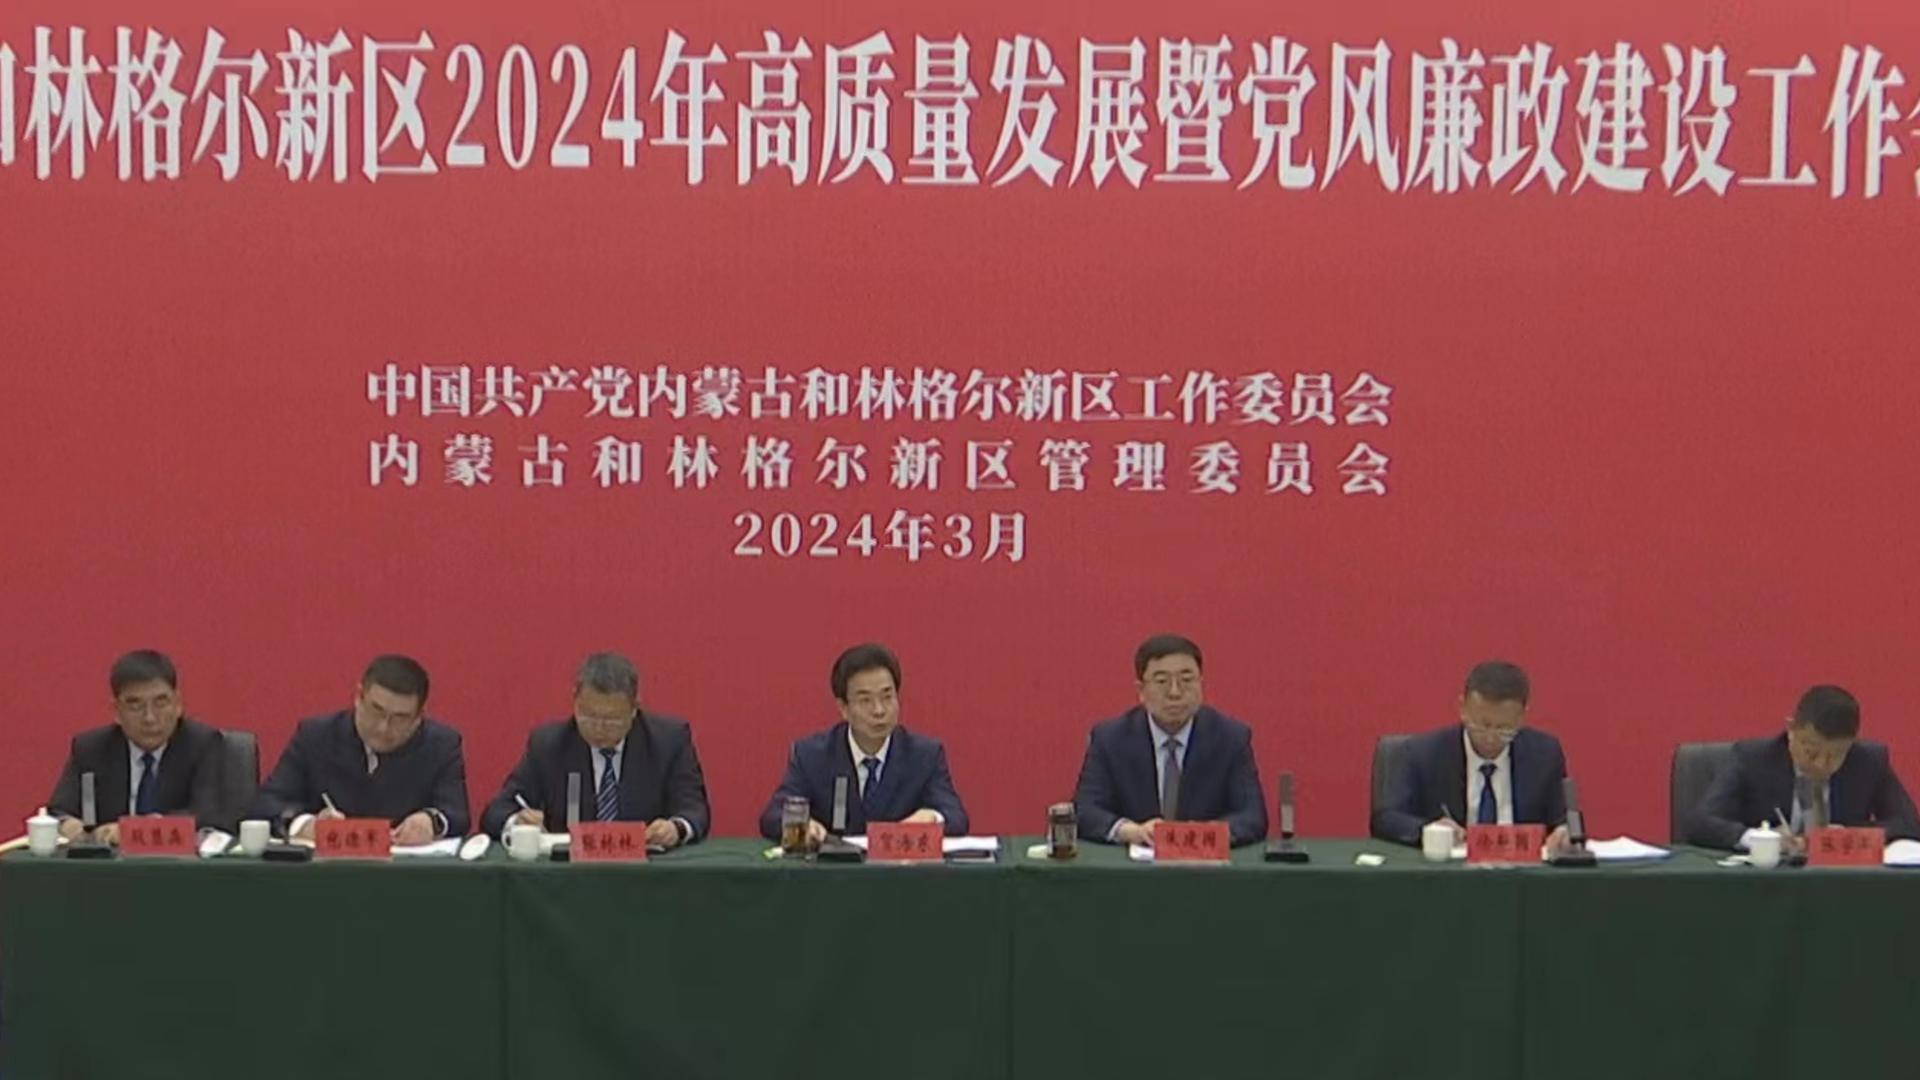 内蒙古和林格尔新区召开2024年高质量发展暨党风廉政建设工作会议